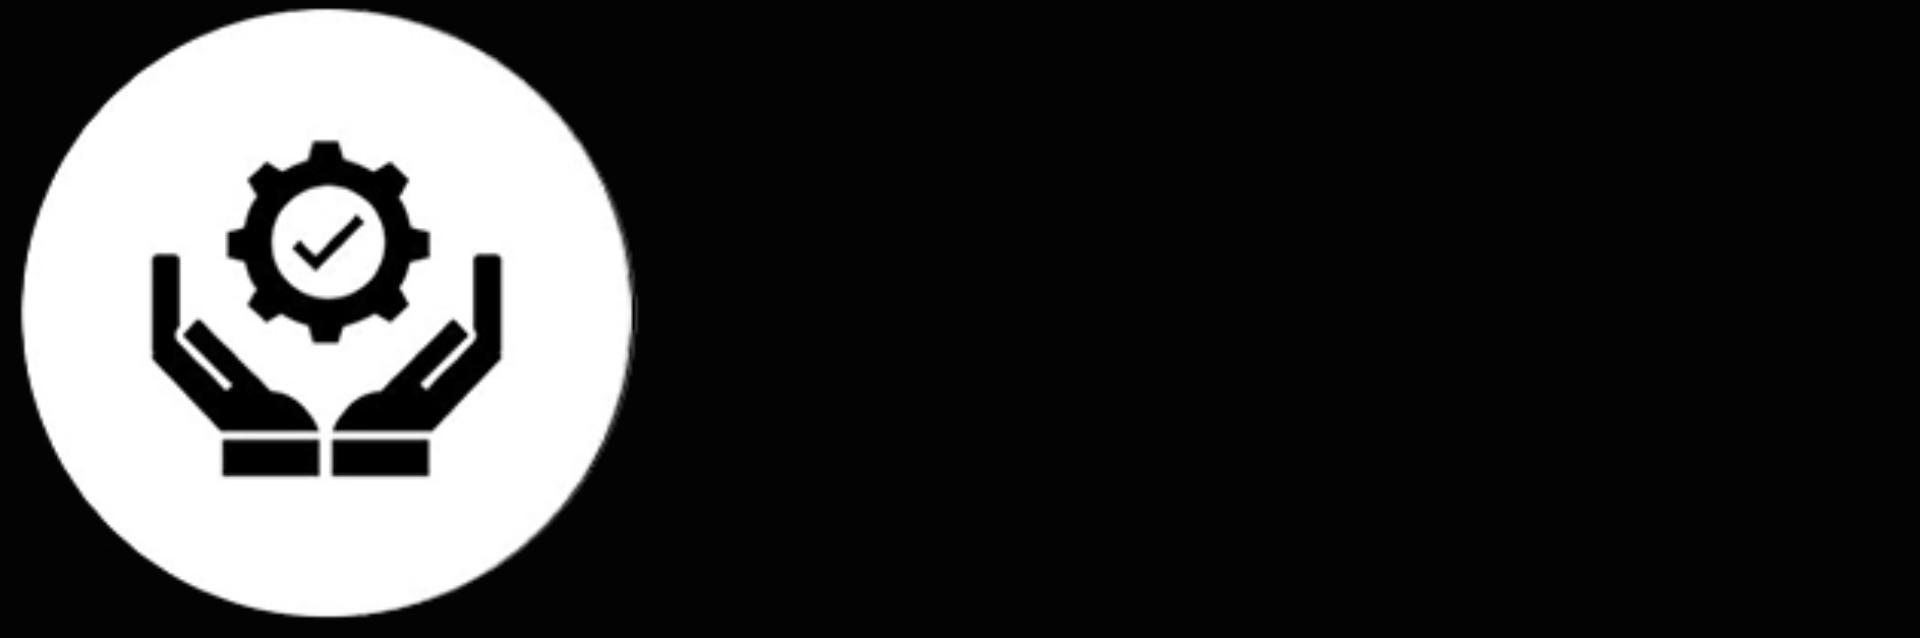 Czarno-biała ikona rąk trzymających okrąg z ikoną zaznaczenia w środku